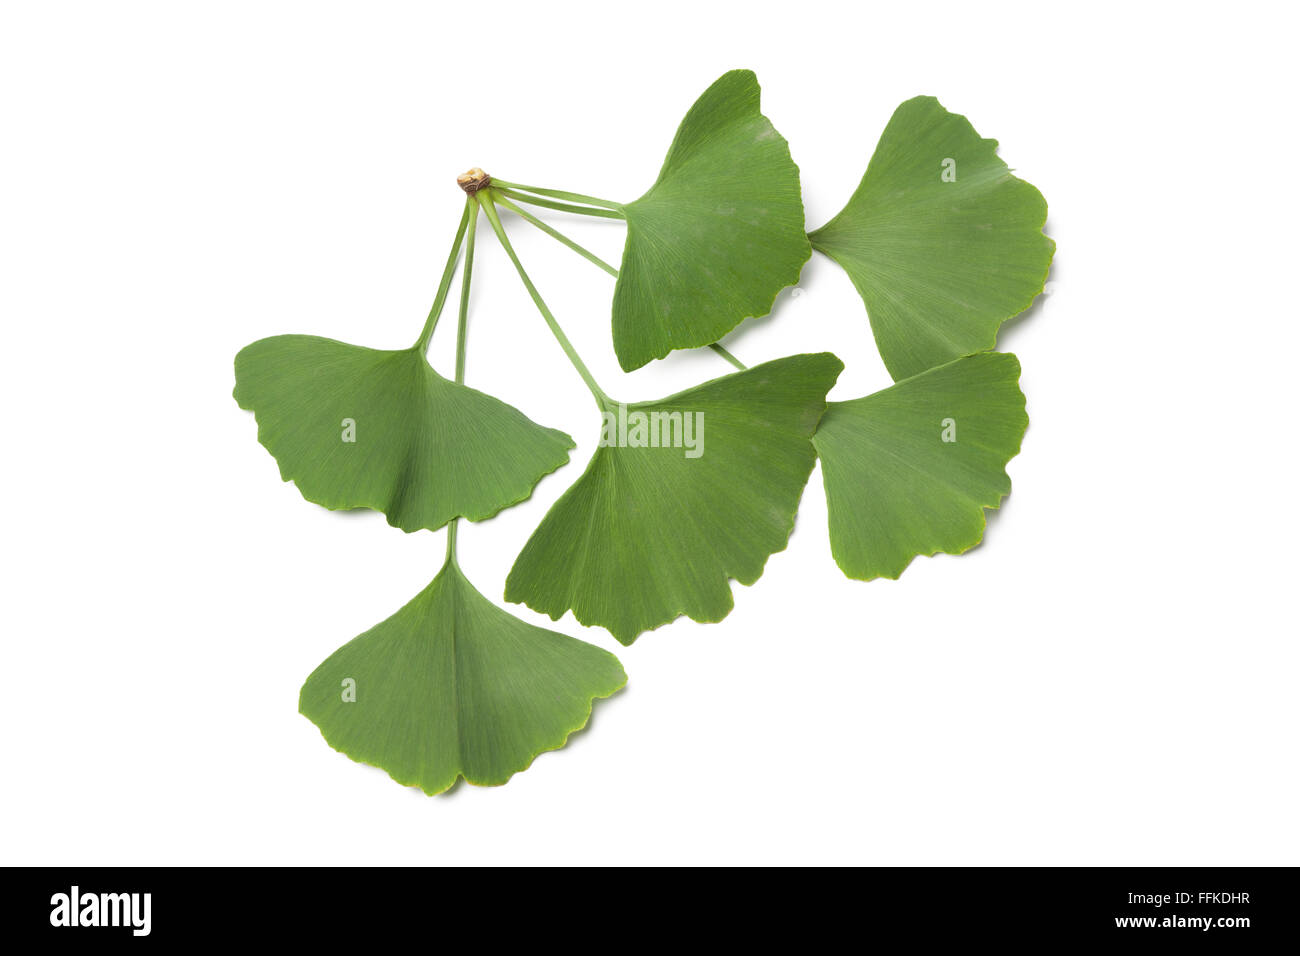 Les feuilles de ginkgo biloba verte sur fond blanc Banque D'Images